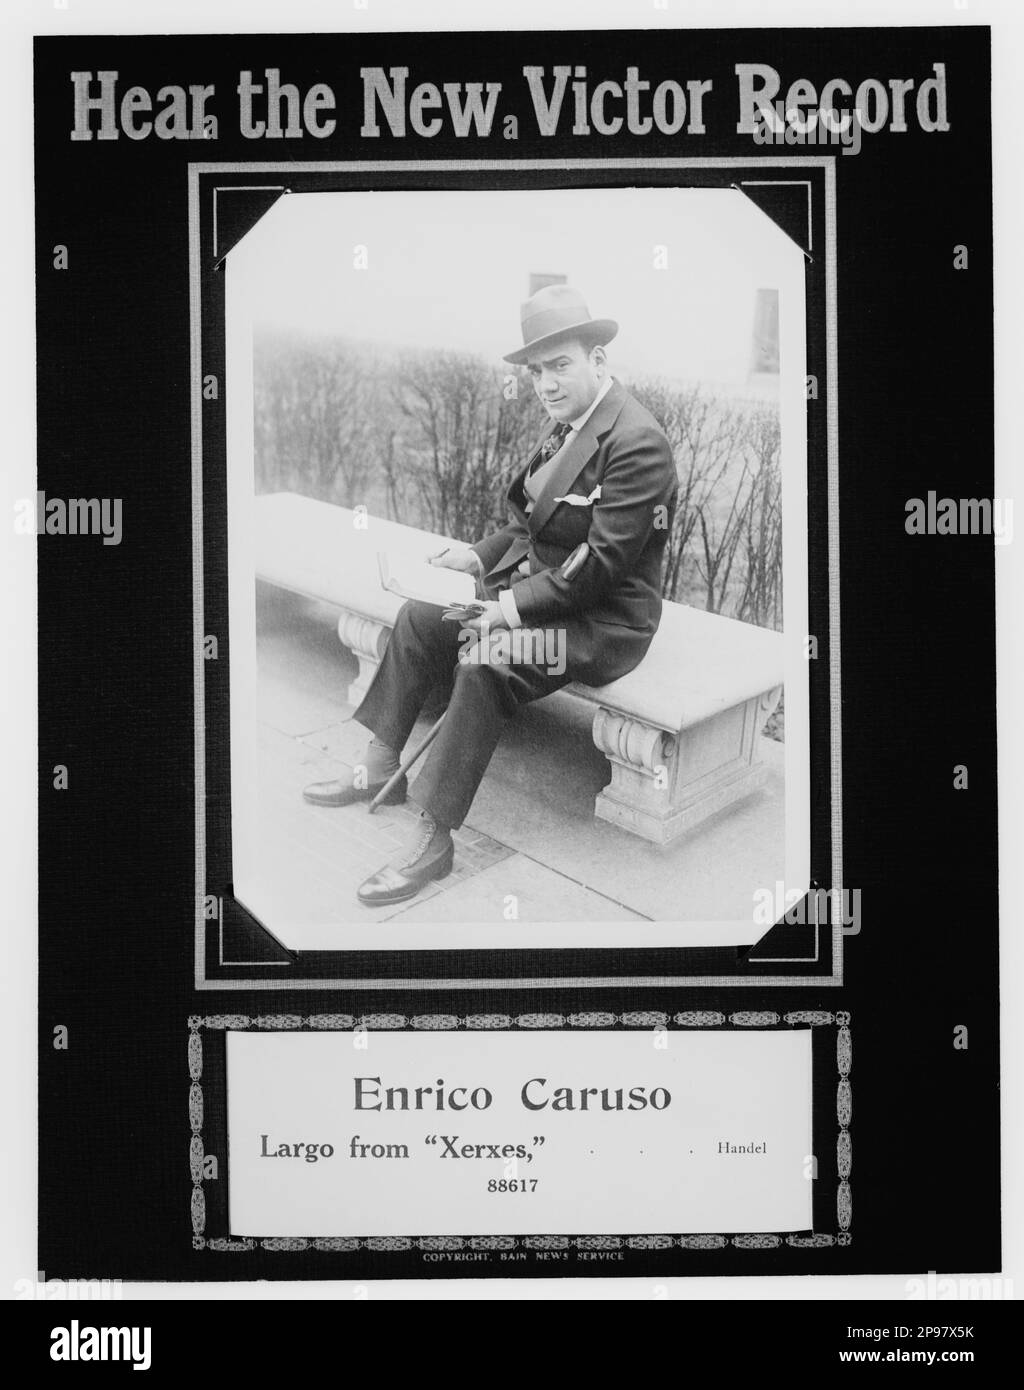 1916 ca, New York , USA : The italian Opera singer tenore  ENRICO CARUSO ( Napoli 1873 - 1921 ) advertising for the new 78rpm record XERXES ( by Handel ) for Victor Record Talking Machine .     -  MUSICA CLASSICA - CLASSICAL - MUSIC - portrait - ritratto - cappello - hat - collar - cravatta  - TENORE - OPERA LIRICA - TEATRO - THEATER -   -  reader - lettore - panchina - bastone da passeggio - pubblicita' ----   Archivio GBB Stock Photo